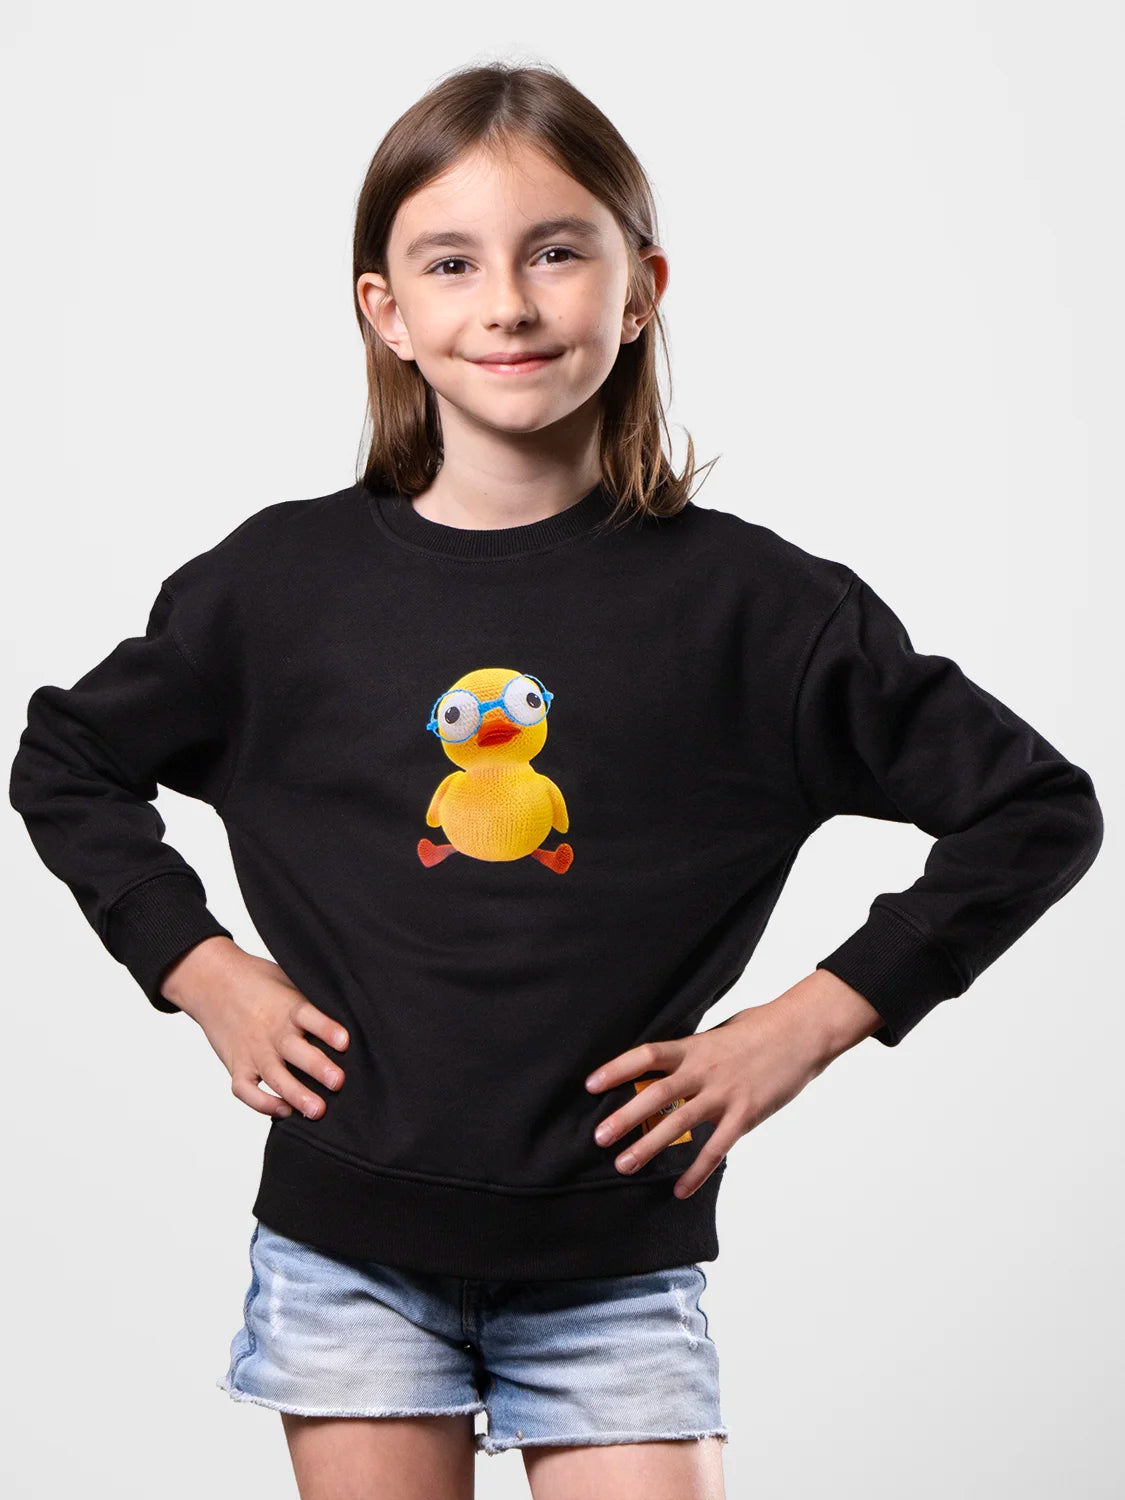 The Duckling Duck Perfect Black Sweatshirt